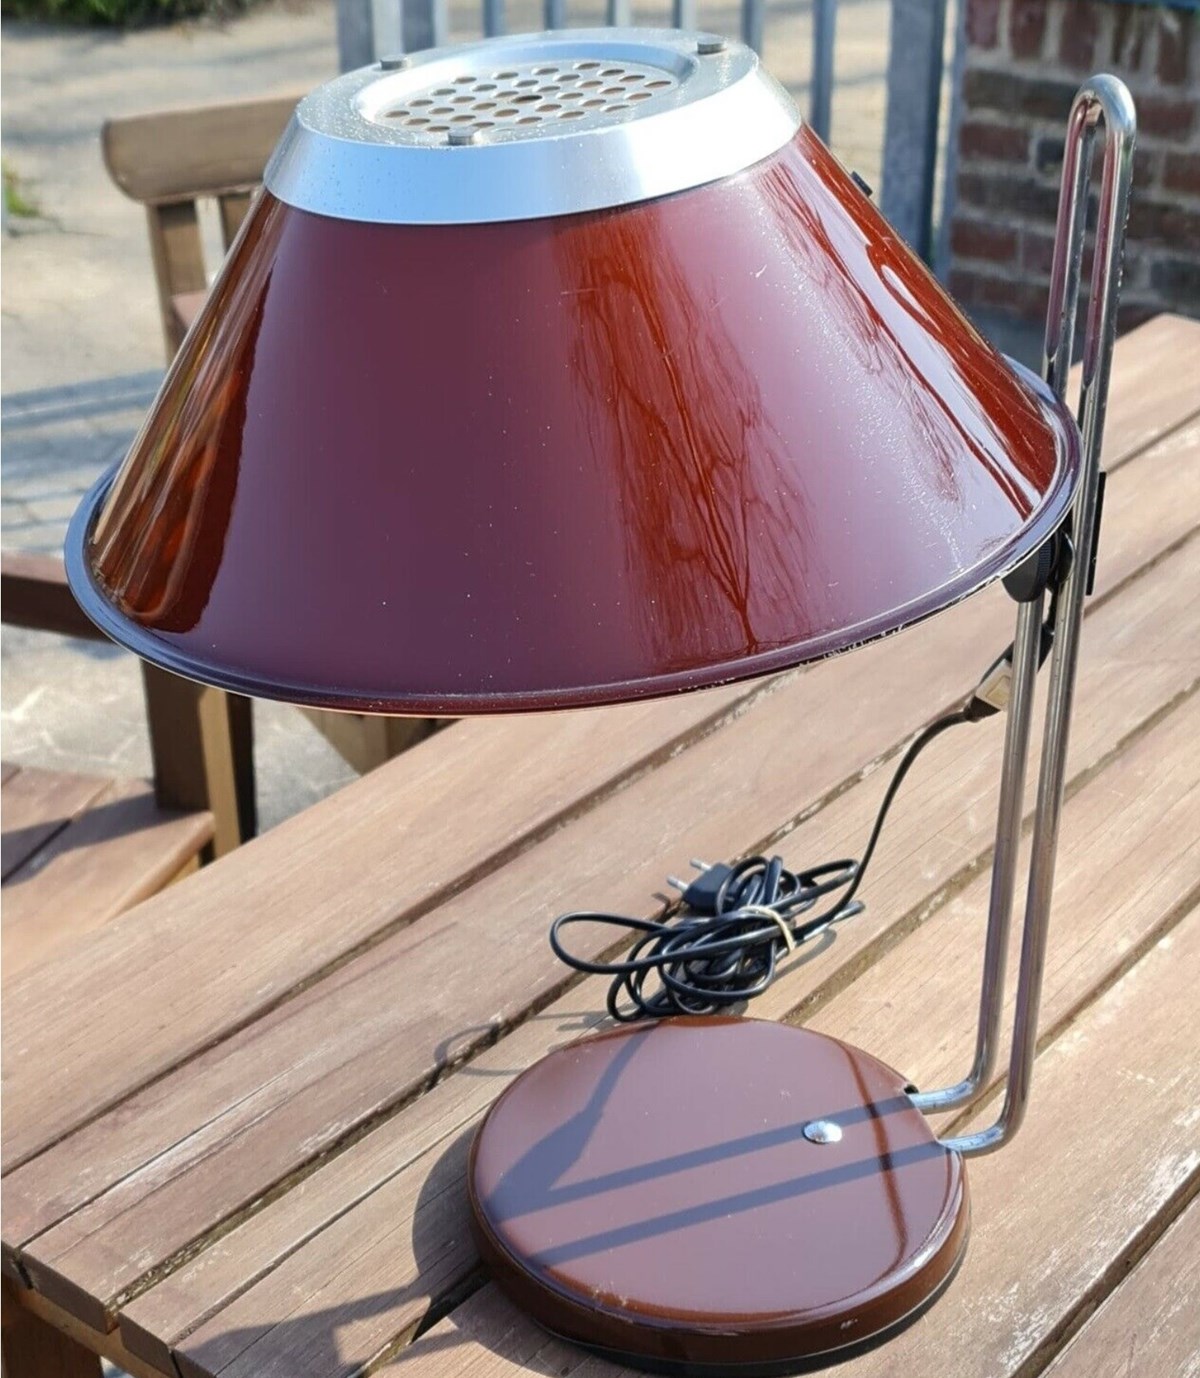 Denne bordlampe fra mærket MARS har Anni lige nu til salg på DBA. Lampen vil hun have 325 kroner for, og den kan du finde i Silkeborg, hvor hun bor